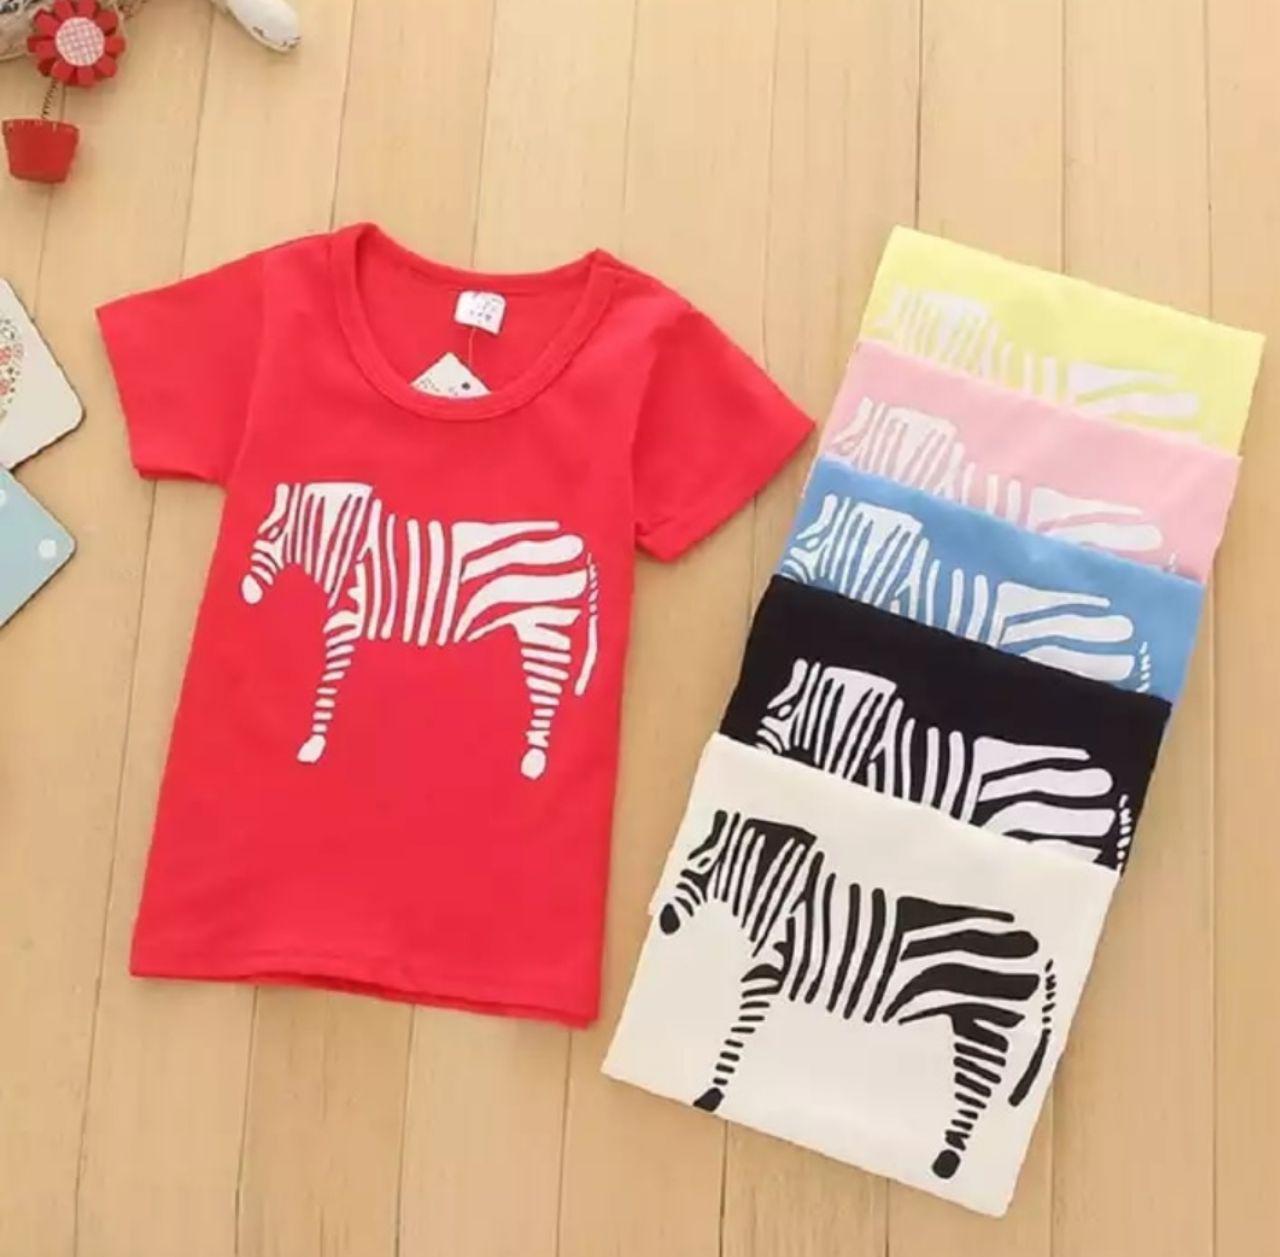 Camisetas para niños en diferentes colores y tallas